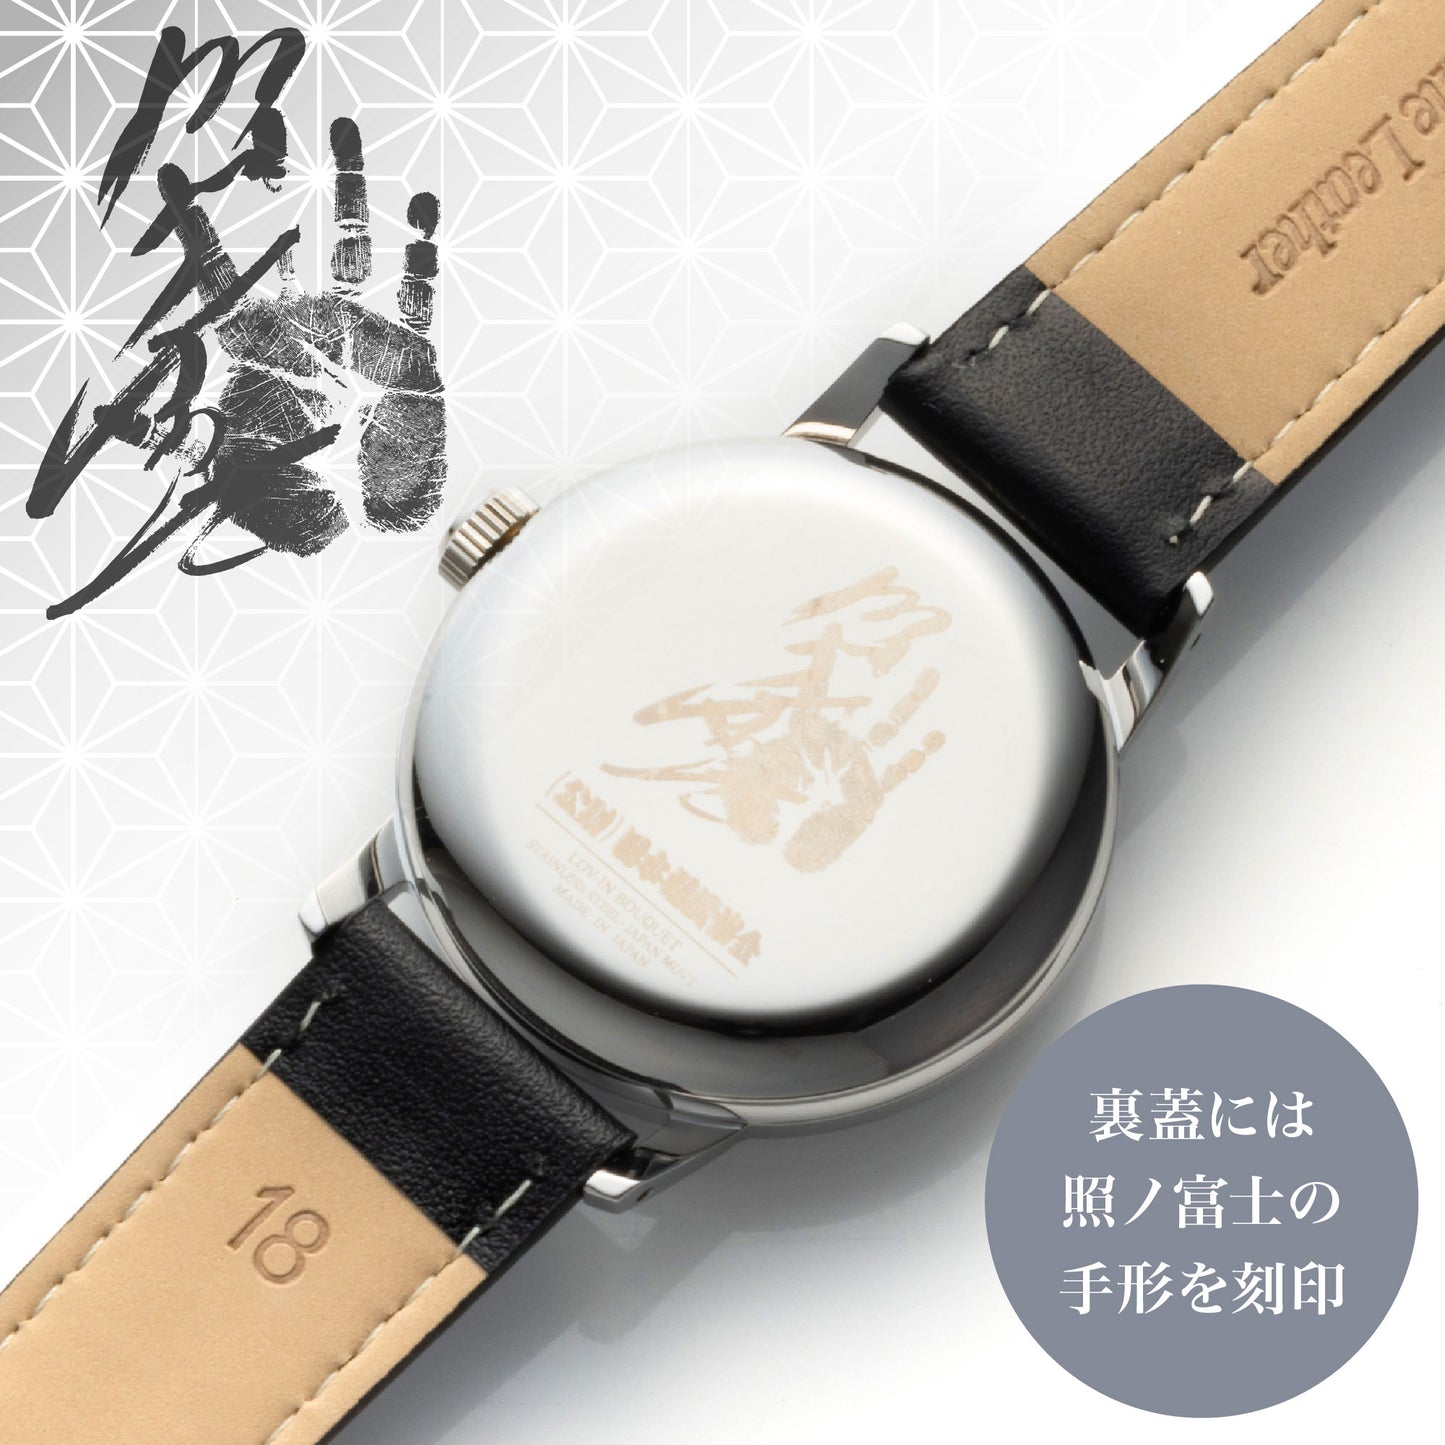 【新商品】レザーバンド腕時計(LVB140)